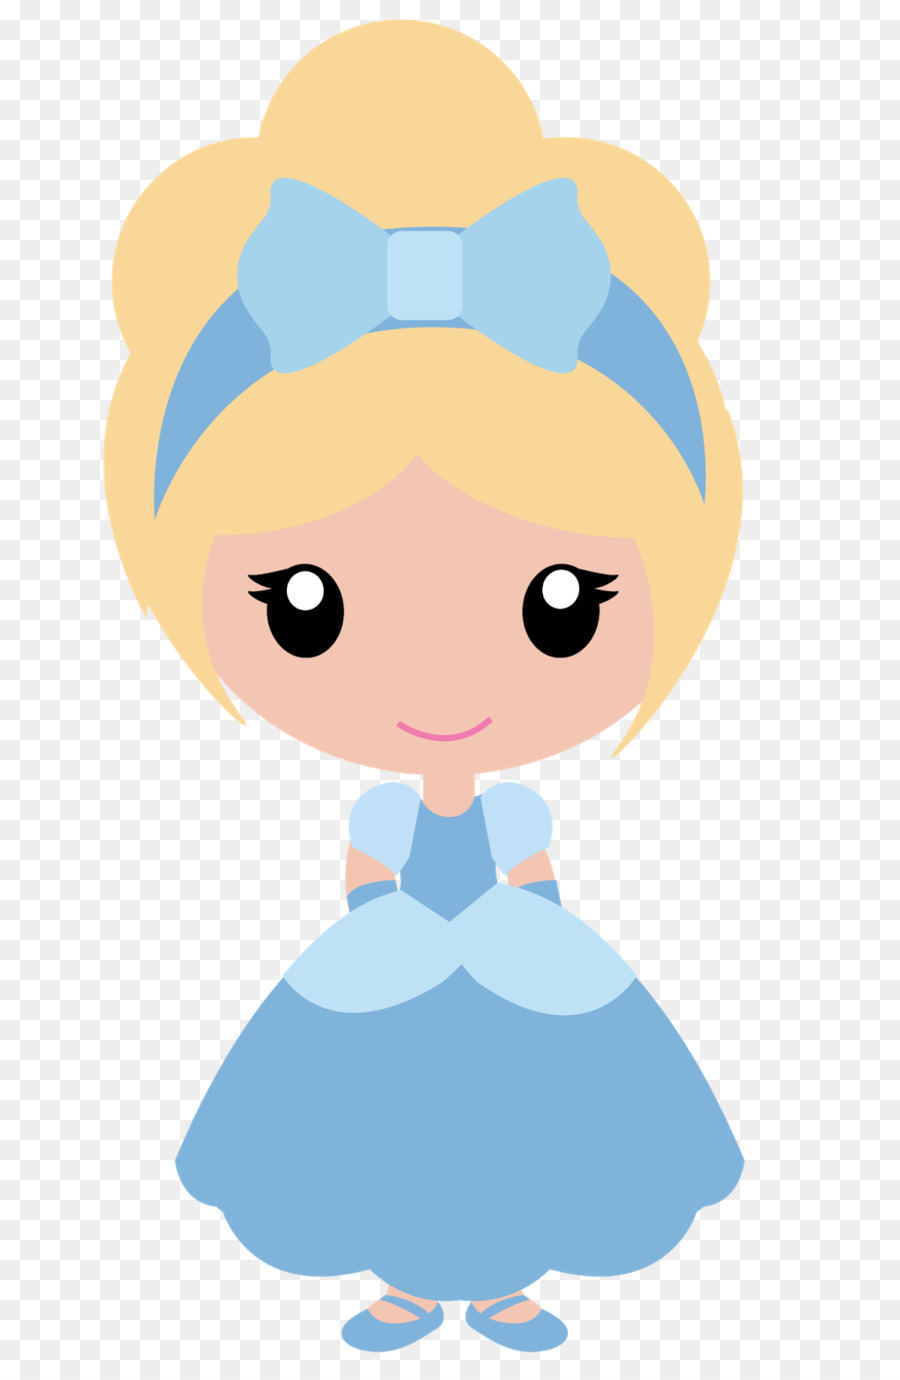 Cinderella Disney Princess Belle Clip art - GIGGLE png download - 1054*1600 - Free Transparent Cinderella png Download.